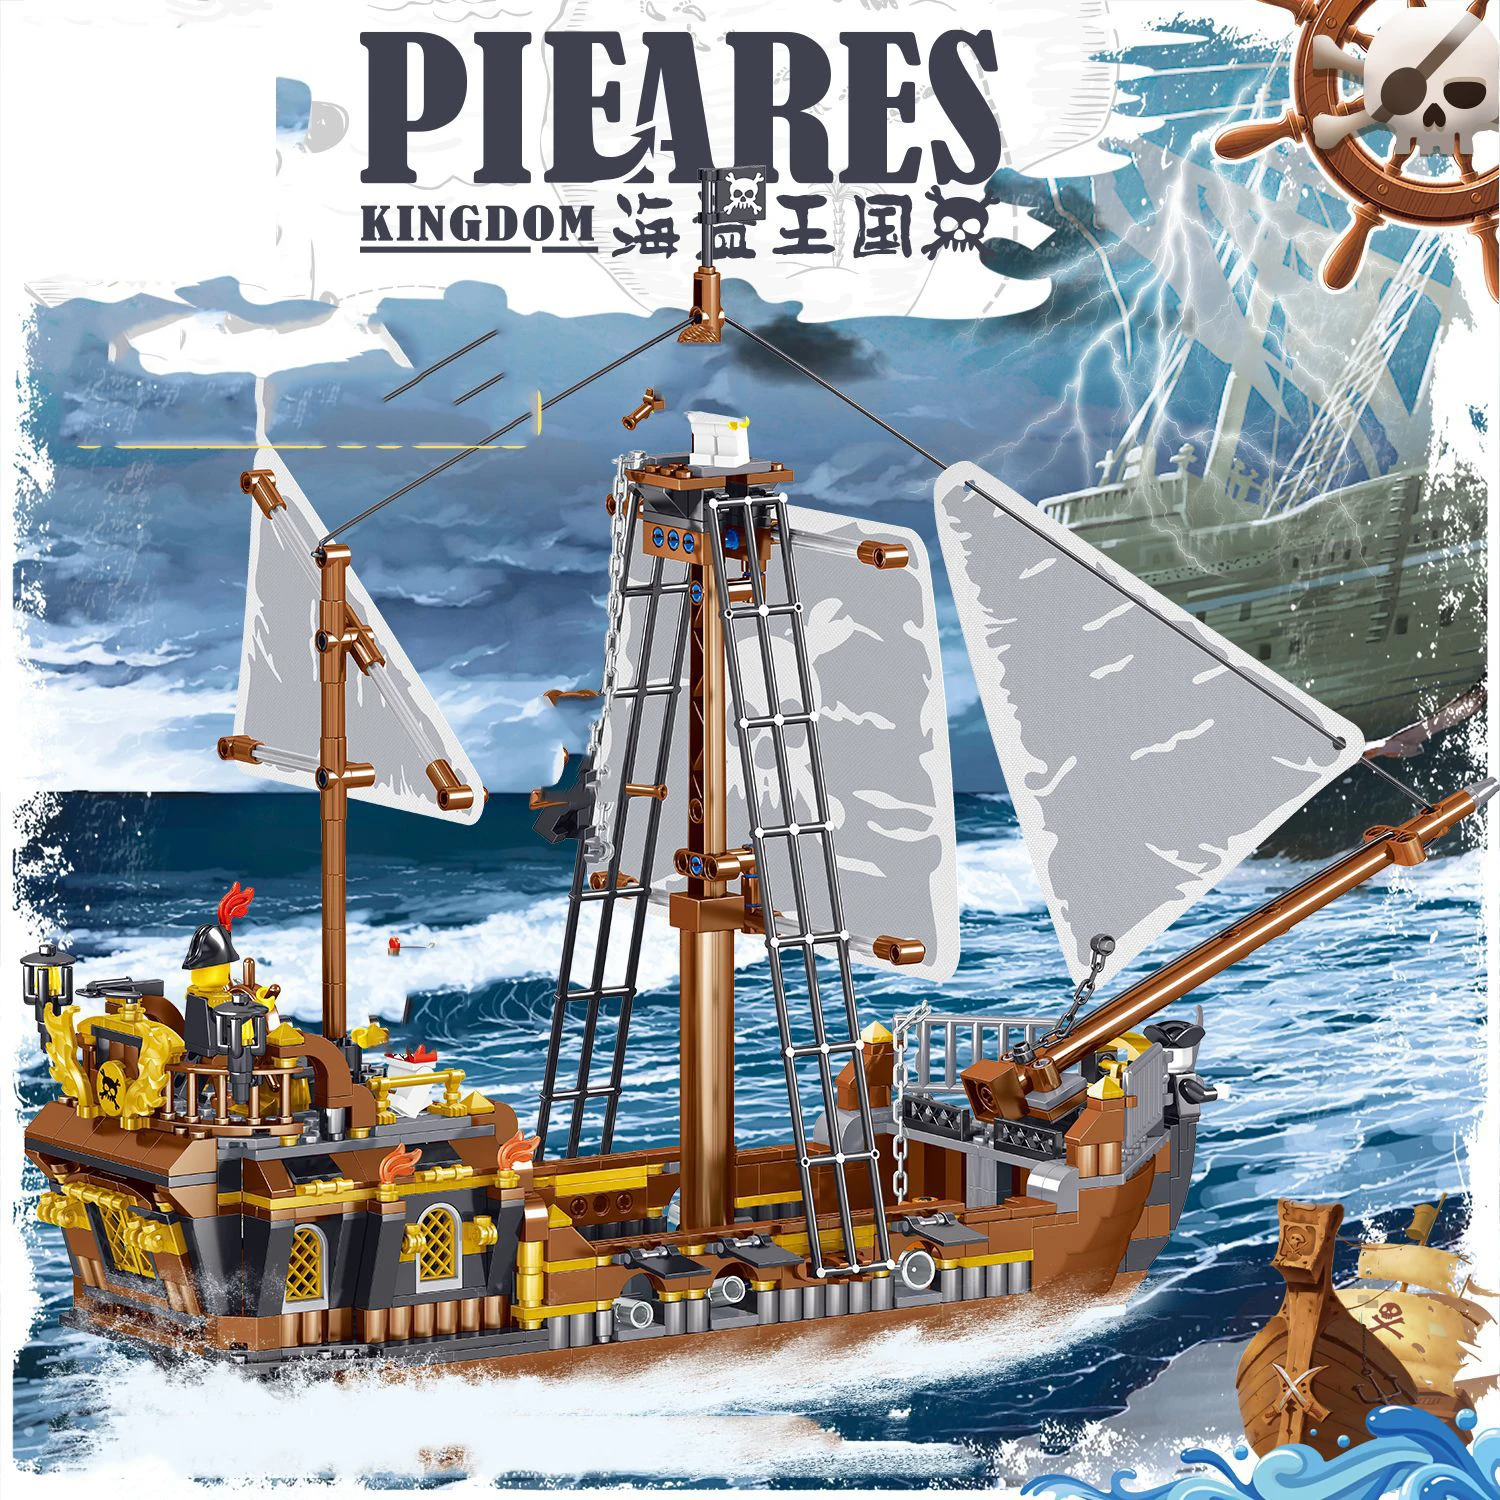 

Пиратский корабль QUNLONG, фигурки пиратов, лодка, приключения, парусная лодка, строительные блоки, экспертные наборы, детские игрушки